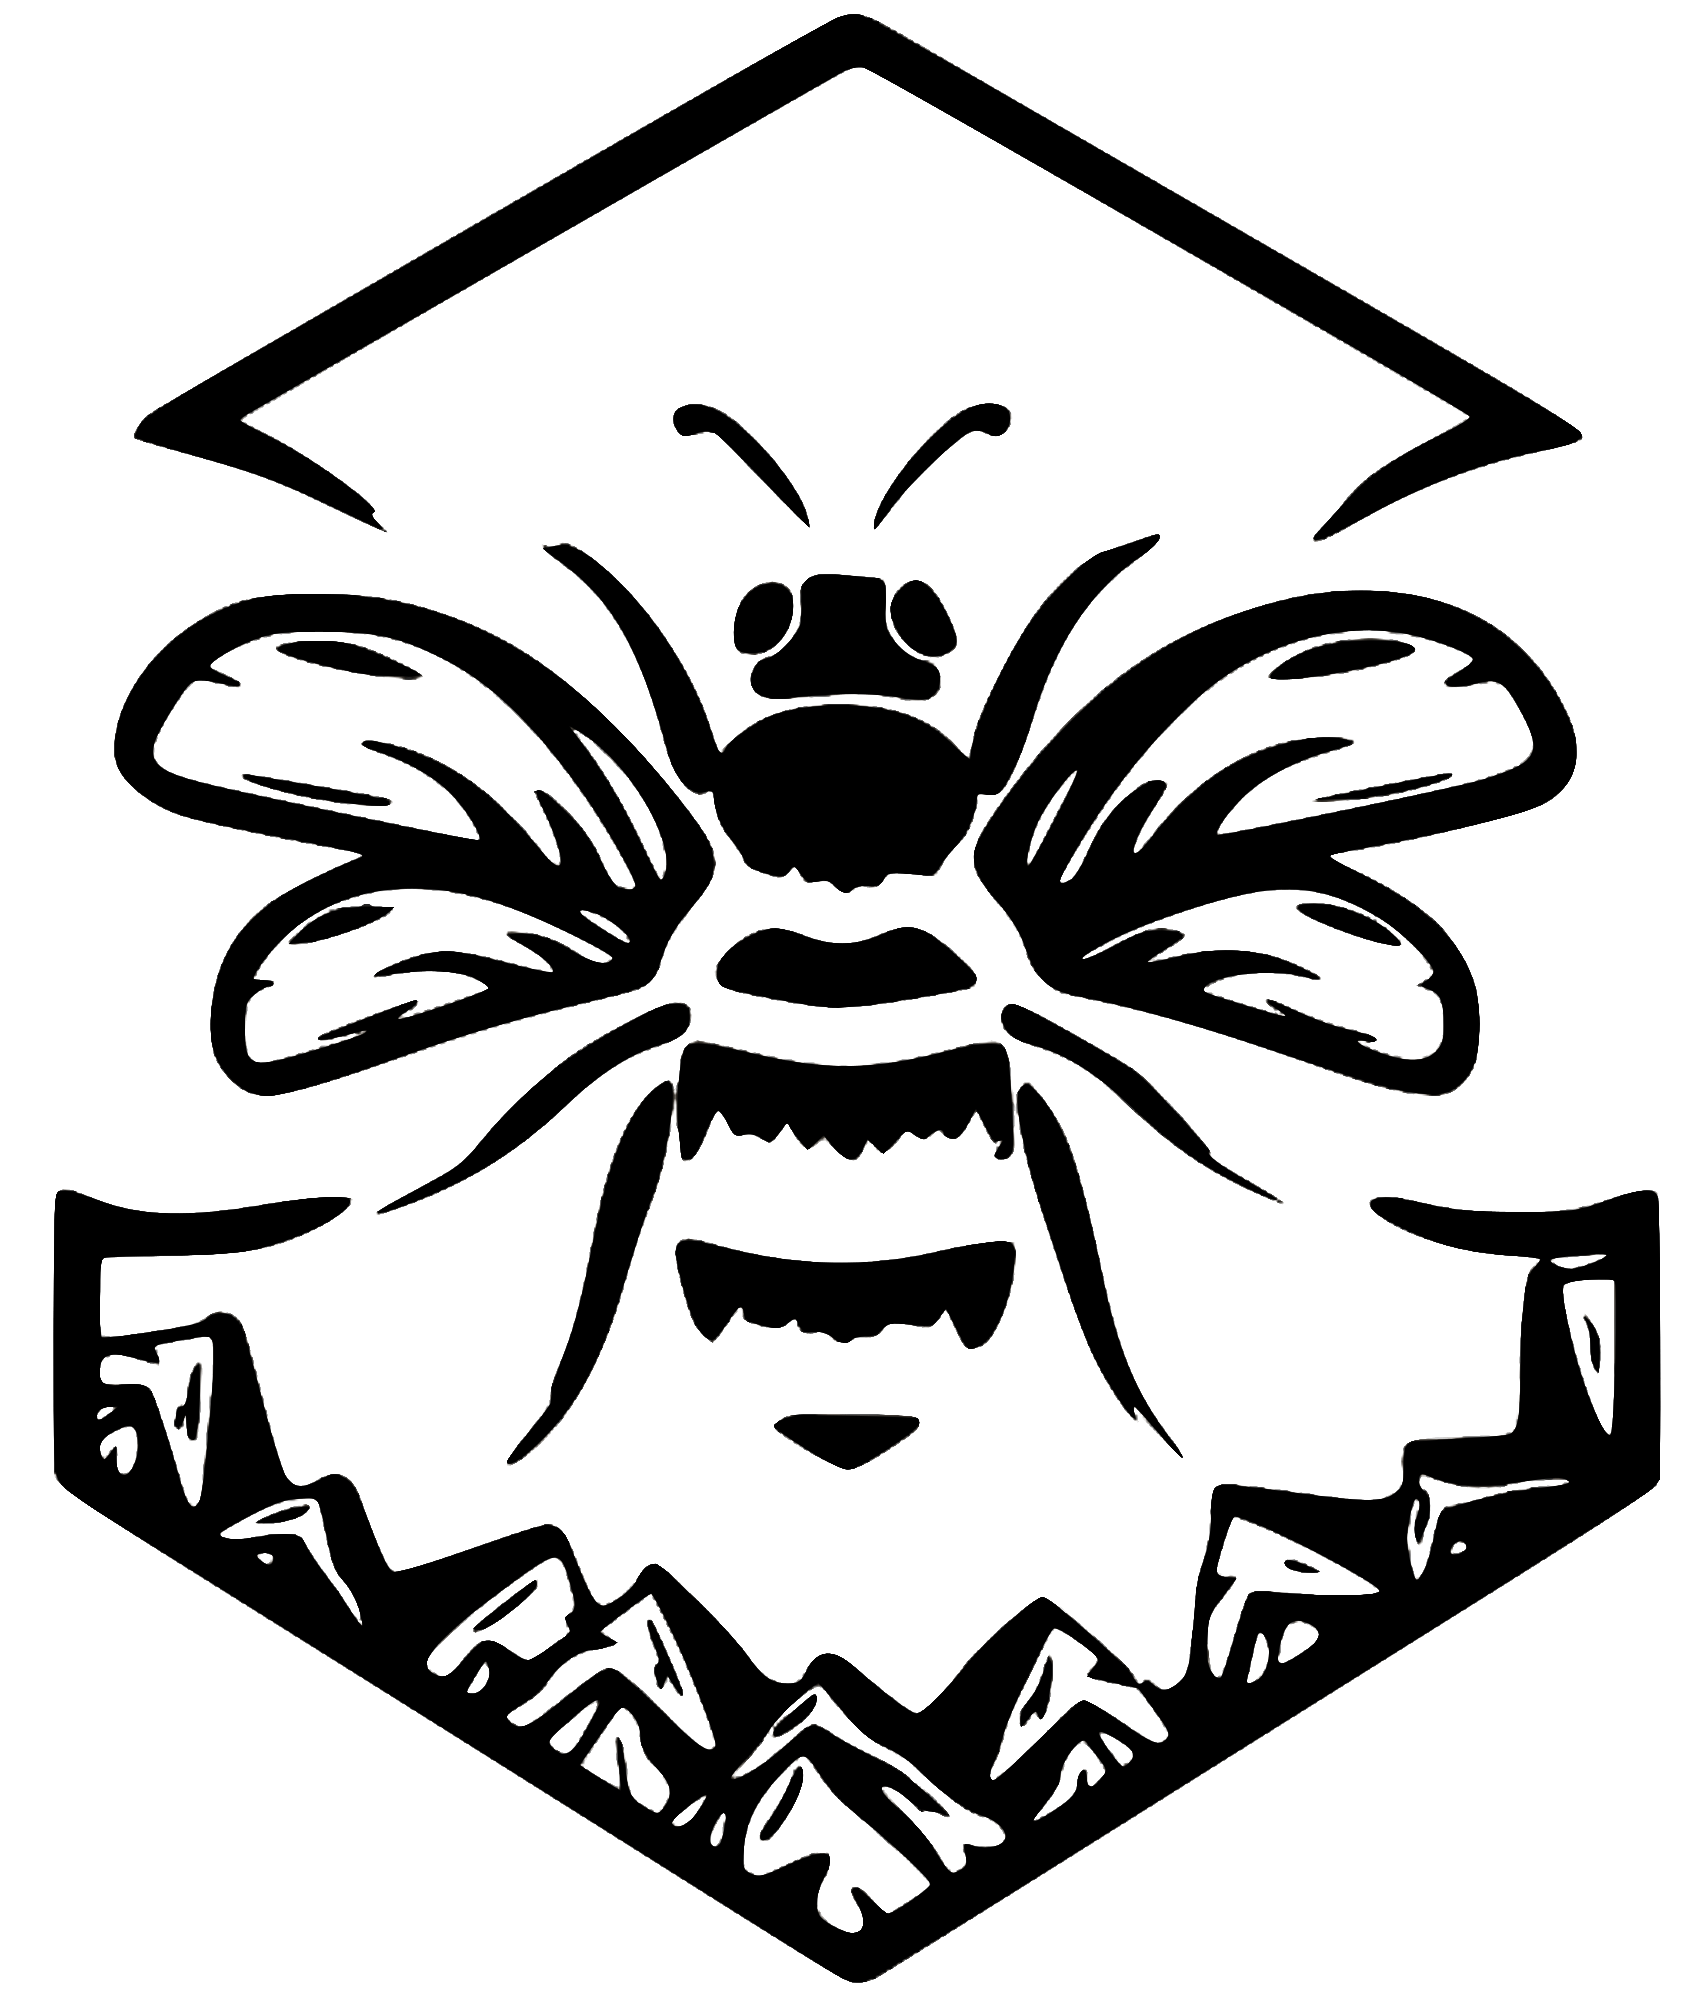 Le logo de Compagnie des miels du Jura